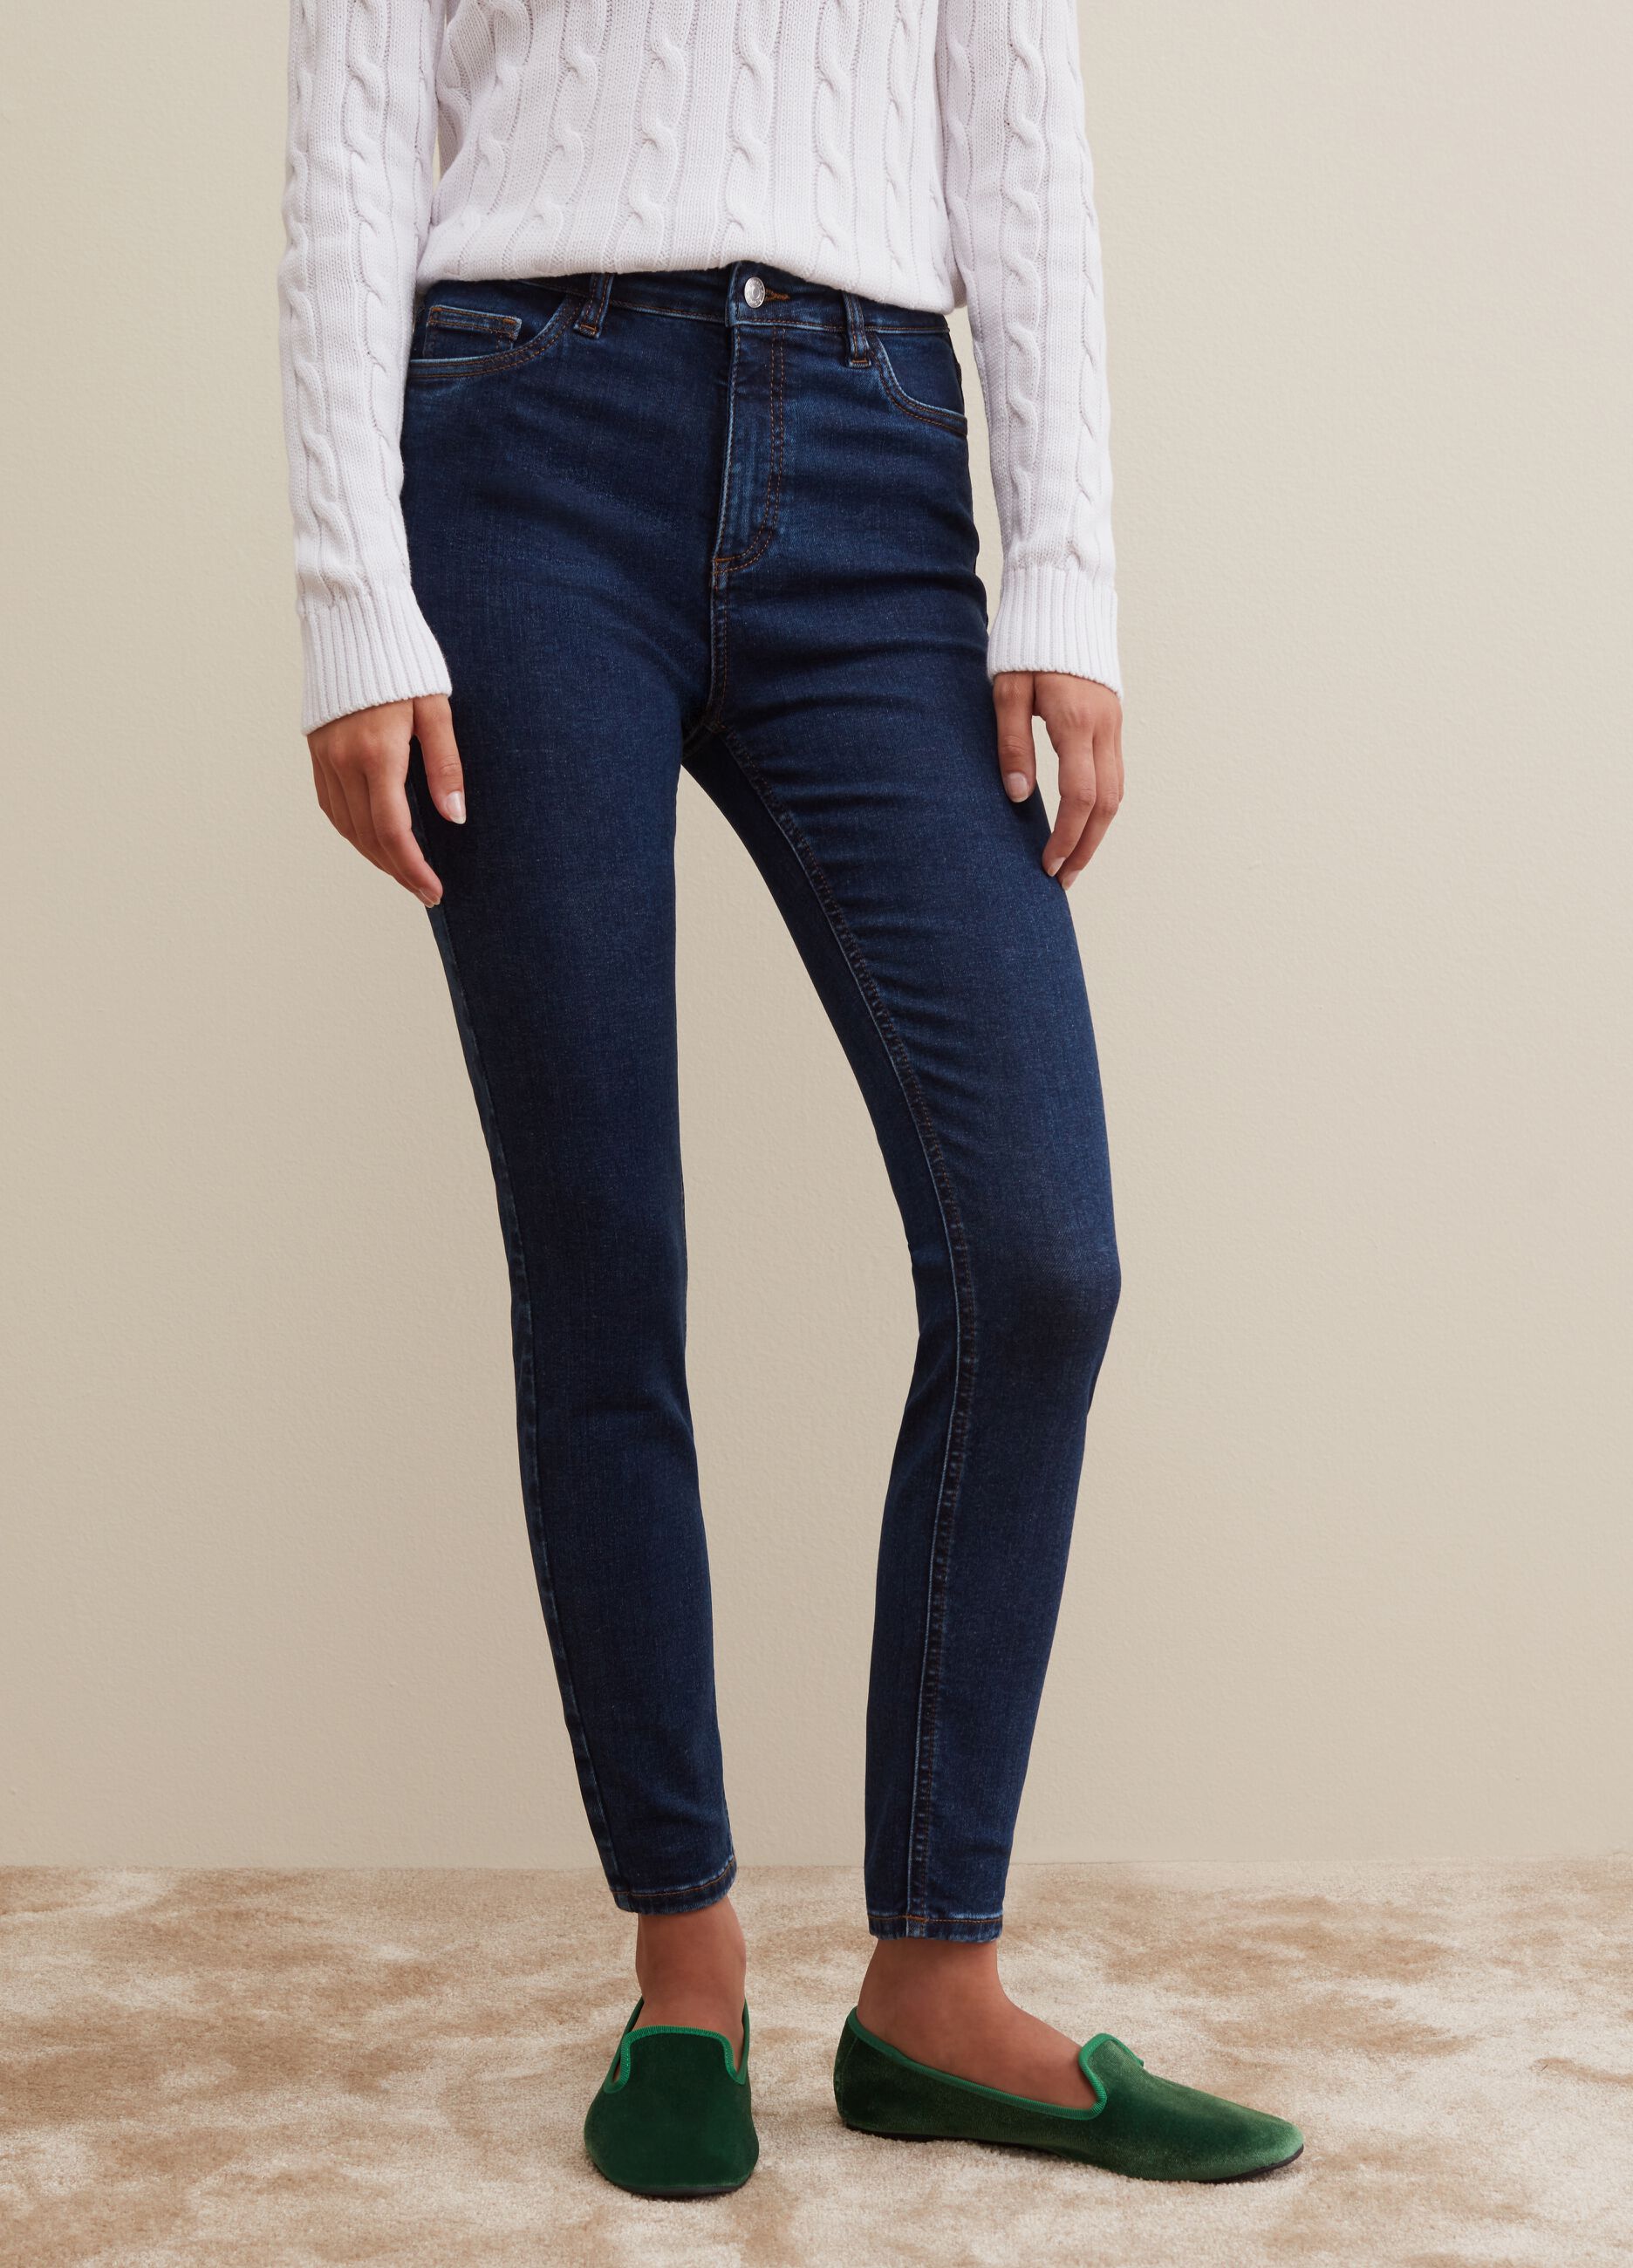 | PIOMBO Jeans: More Italian Wide & Skinny, Women\'s Leg